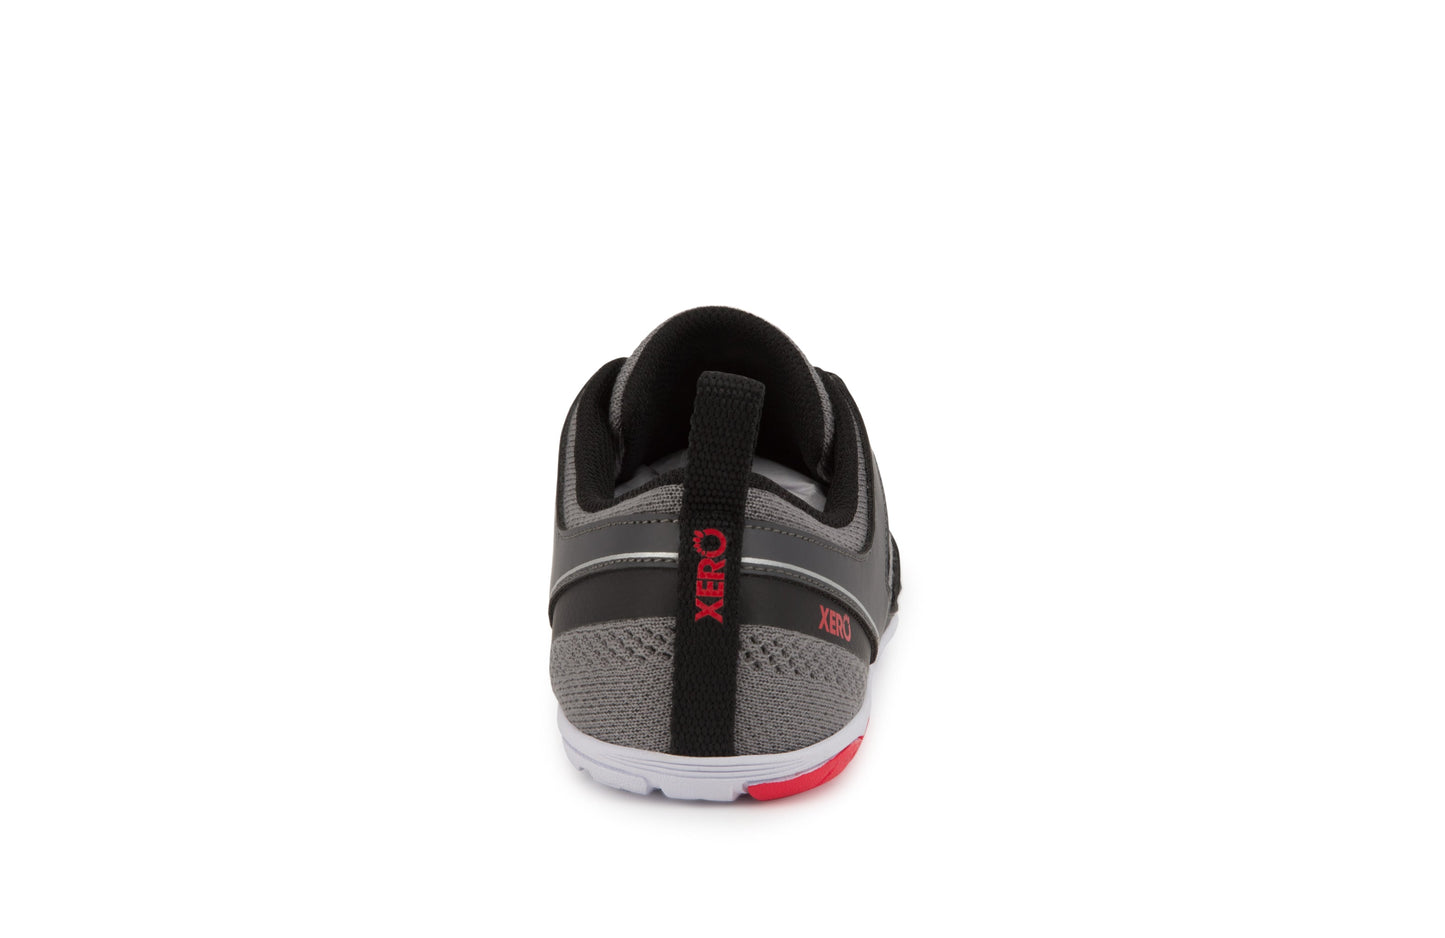 Xero Shoes Zelen Mens barfods sneaker træningssko til mænd i farven dark gray / red, bagfra